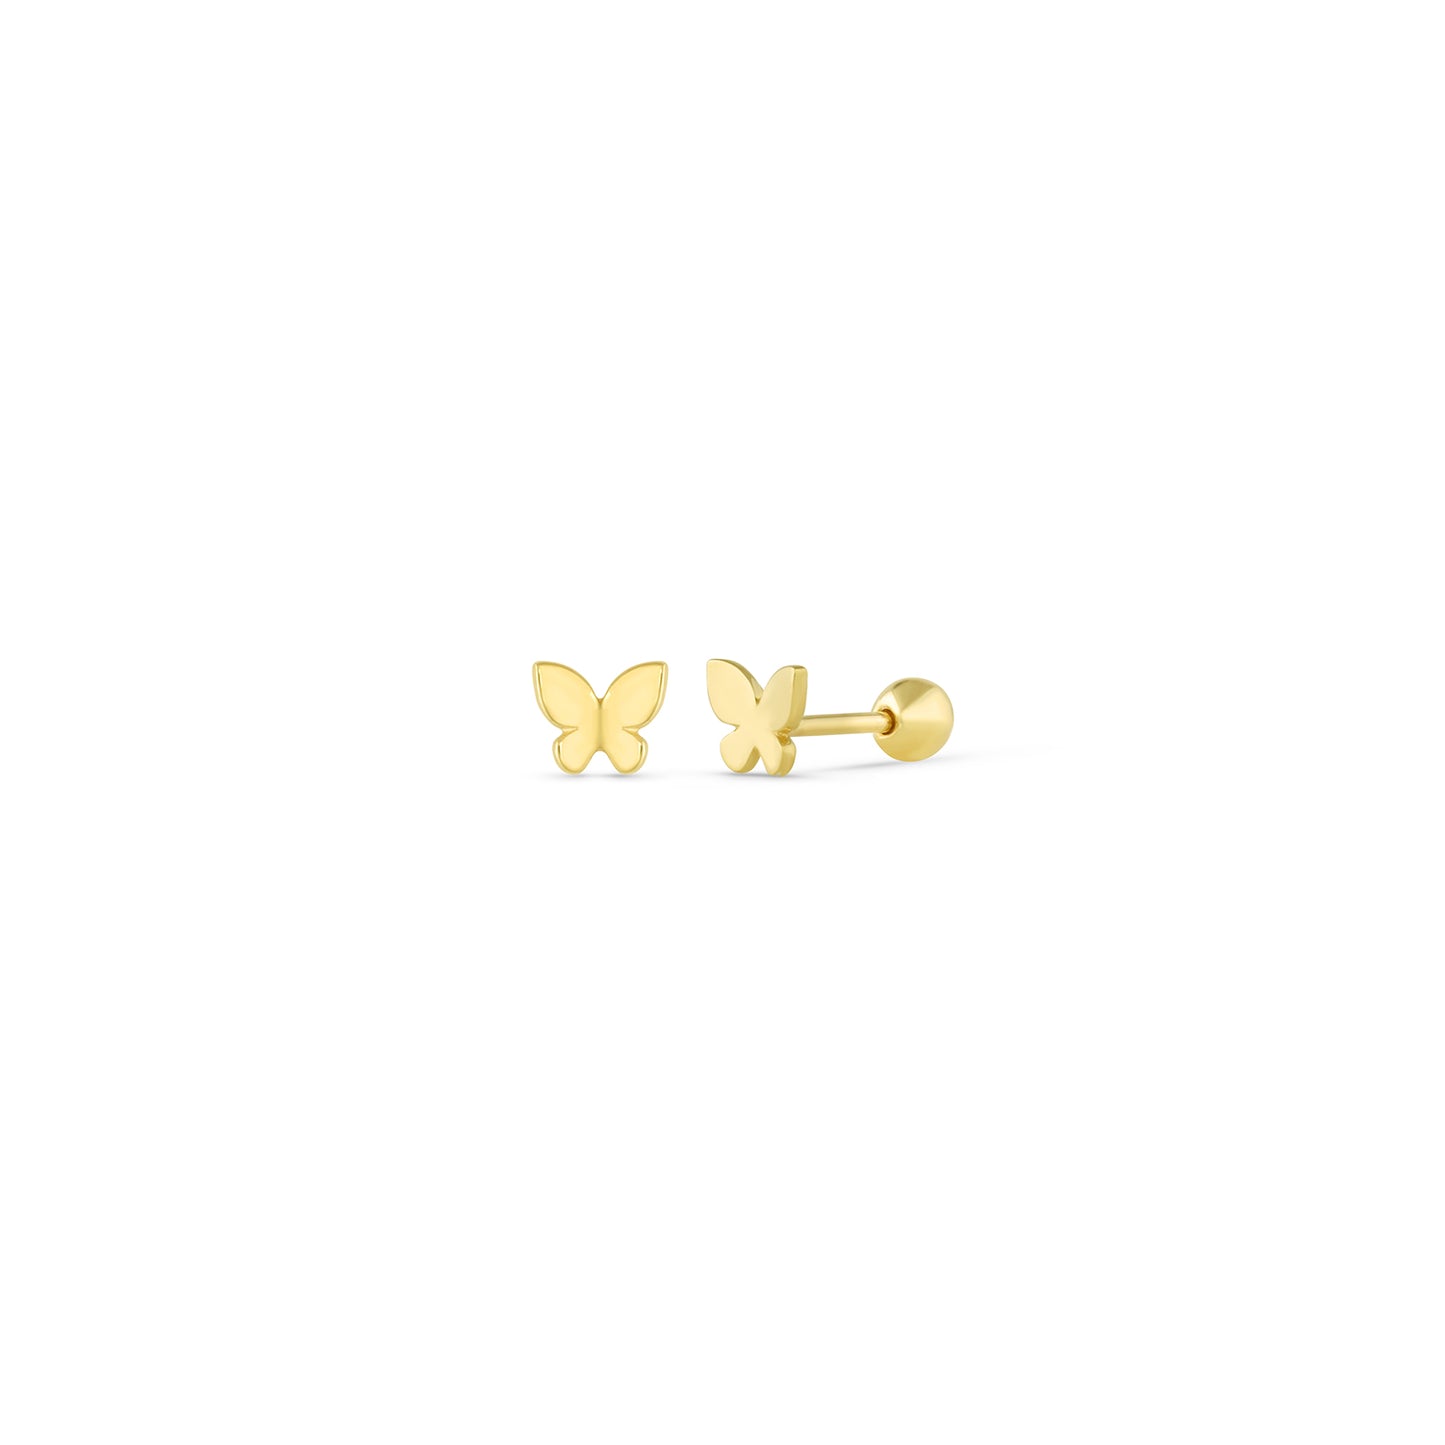 14k Solid Gold Butterfly Earrings